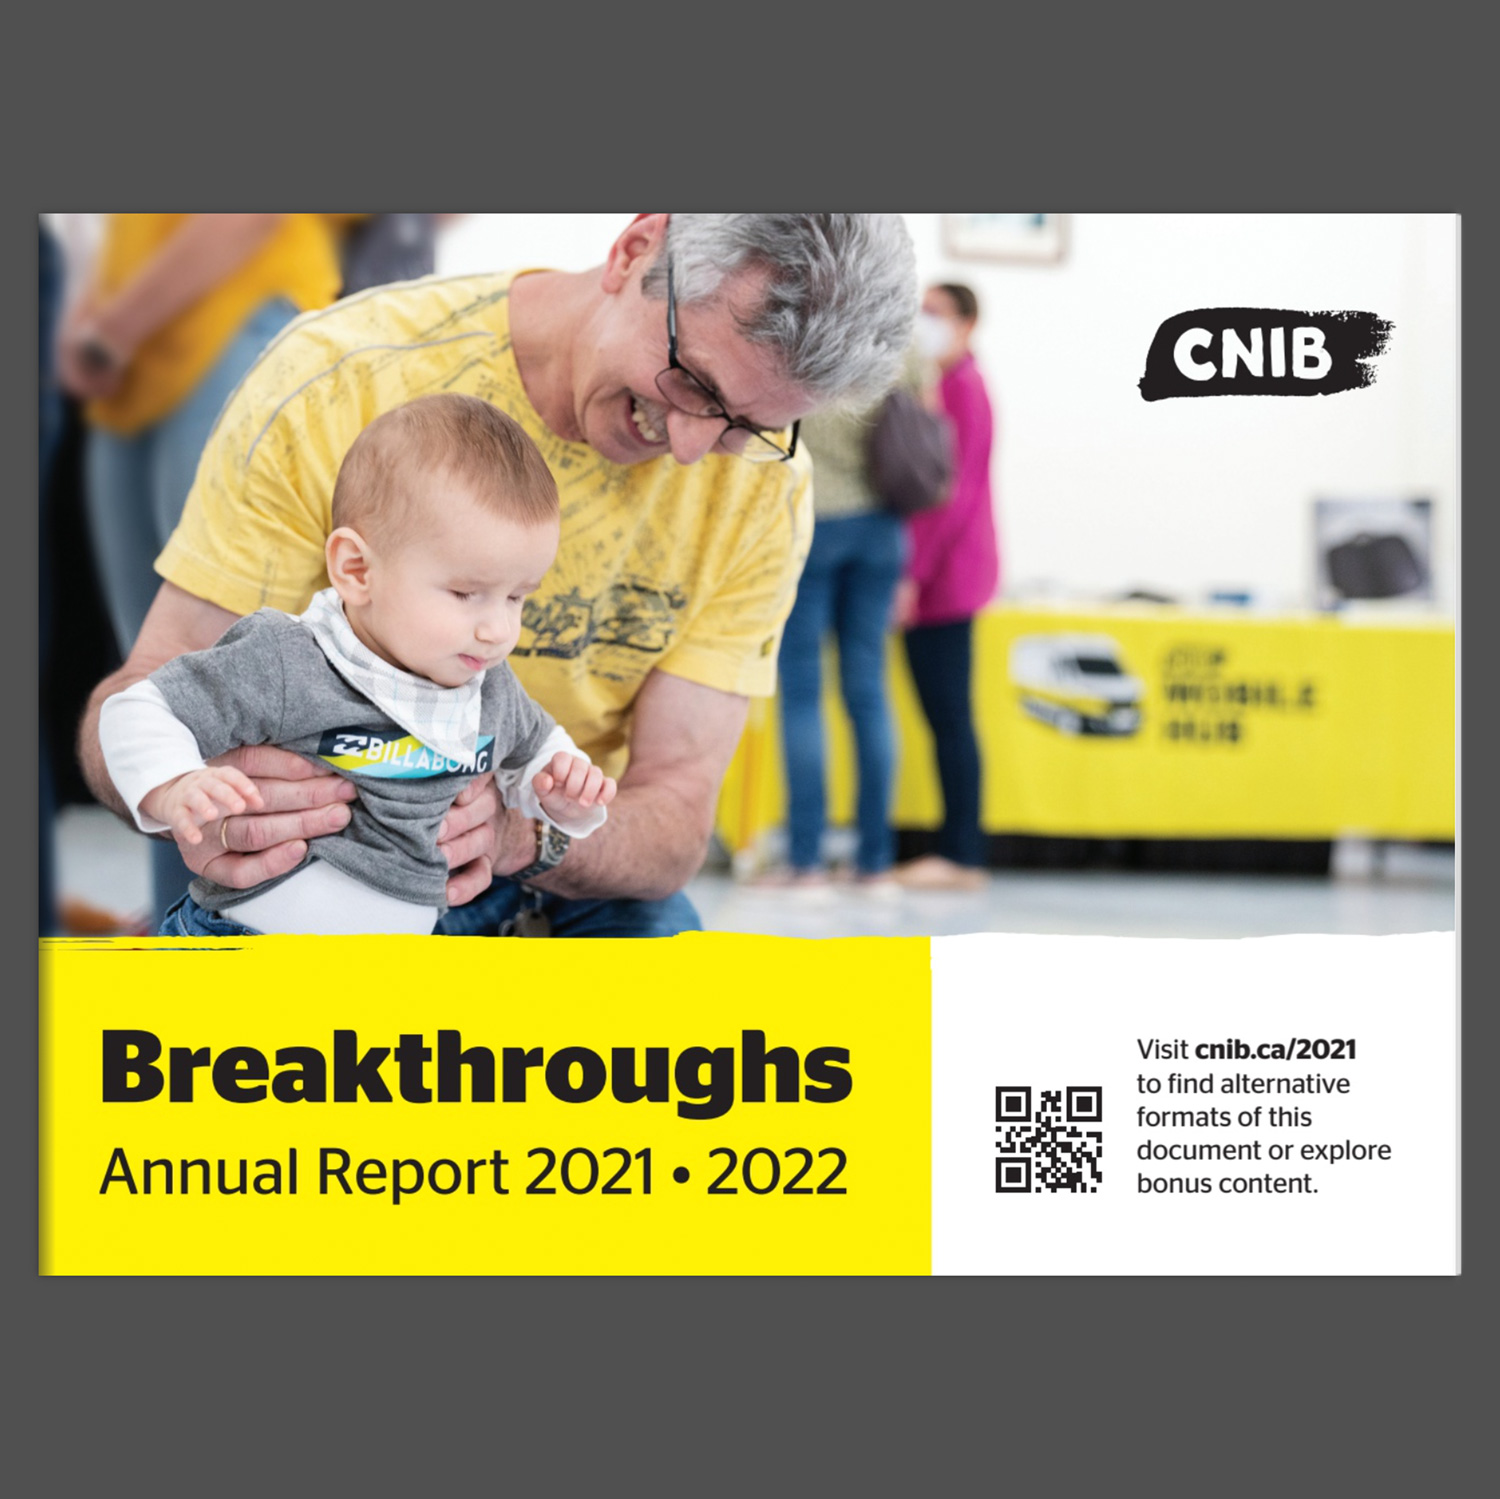 CNIB’s 2021-2022 Annual Report